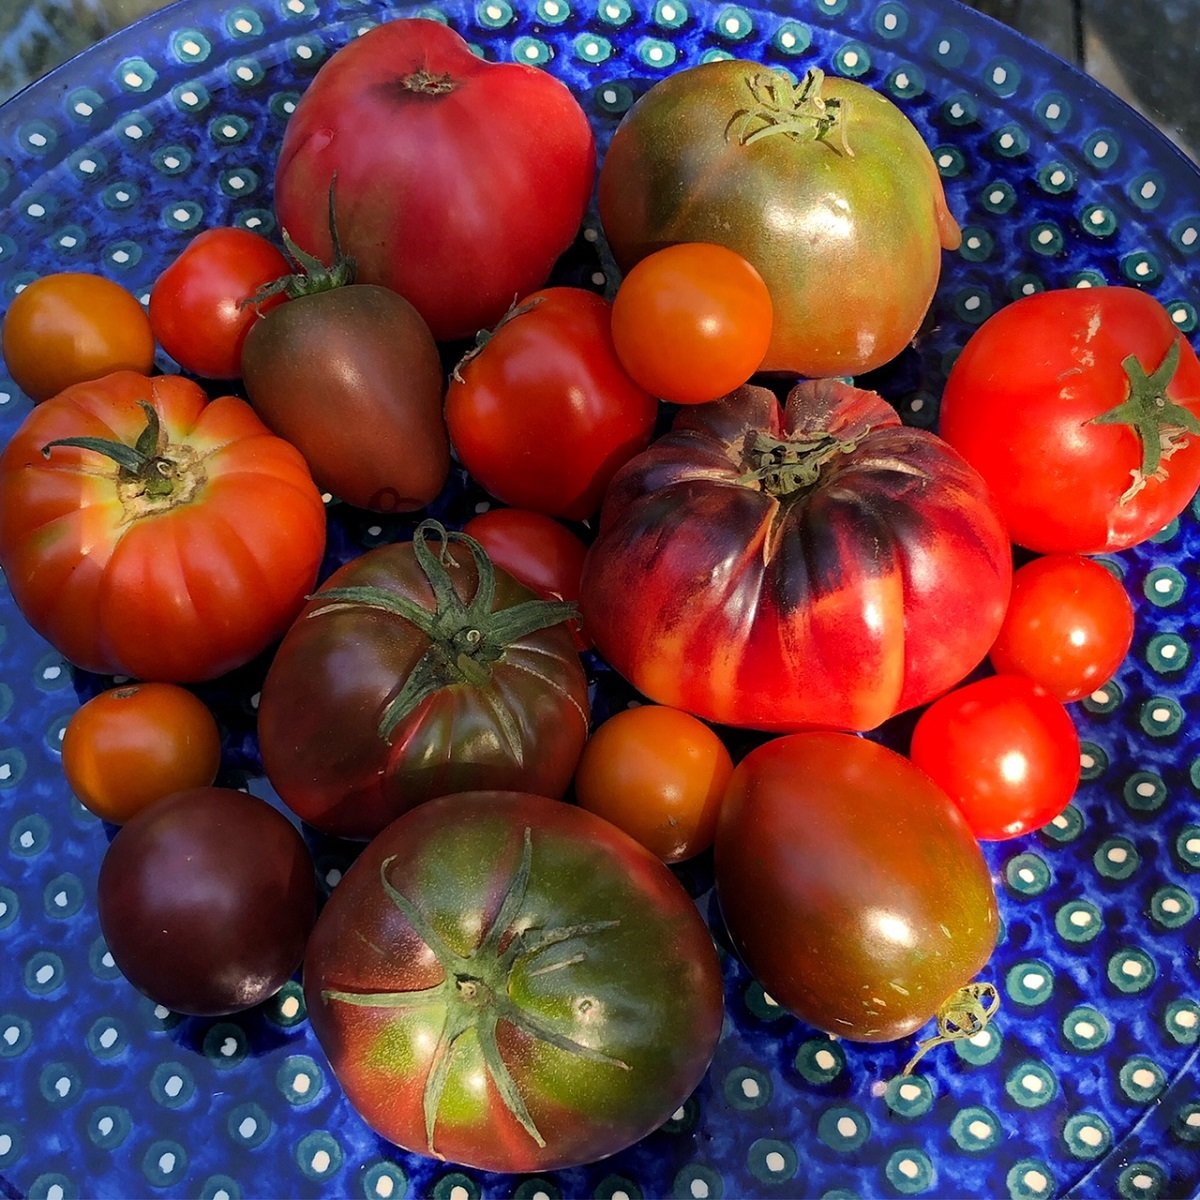 Food_heirloom tomatoes_Sep 2021.jpg